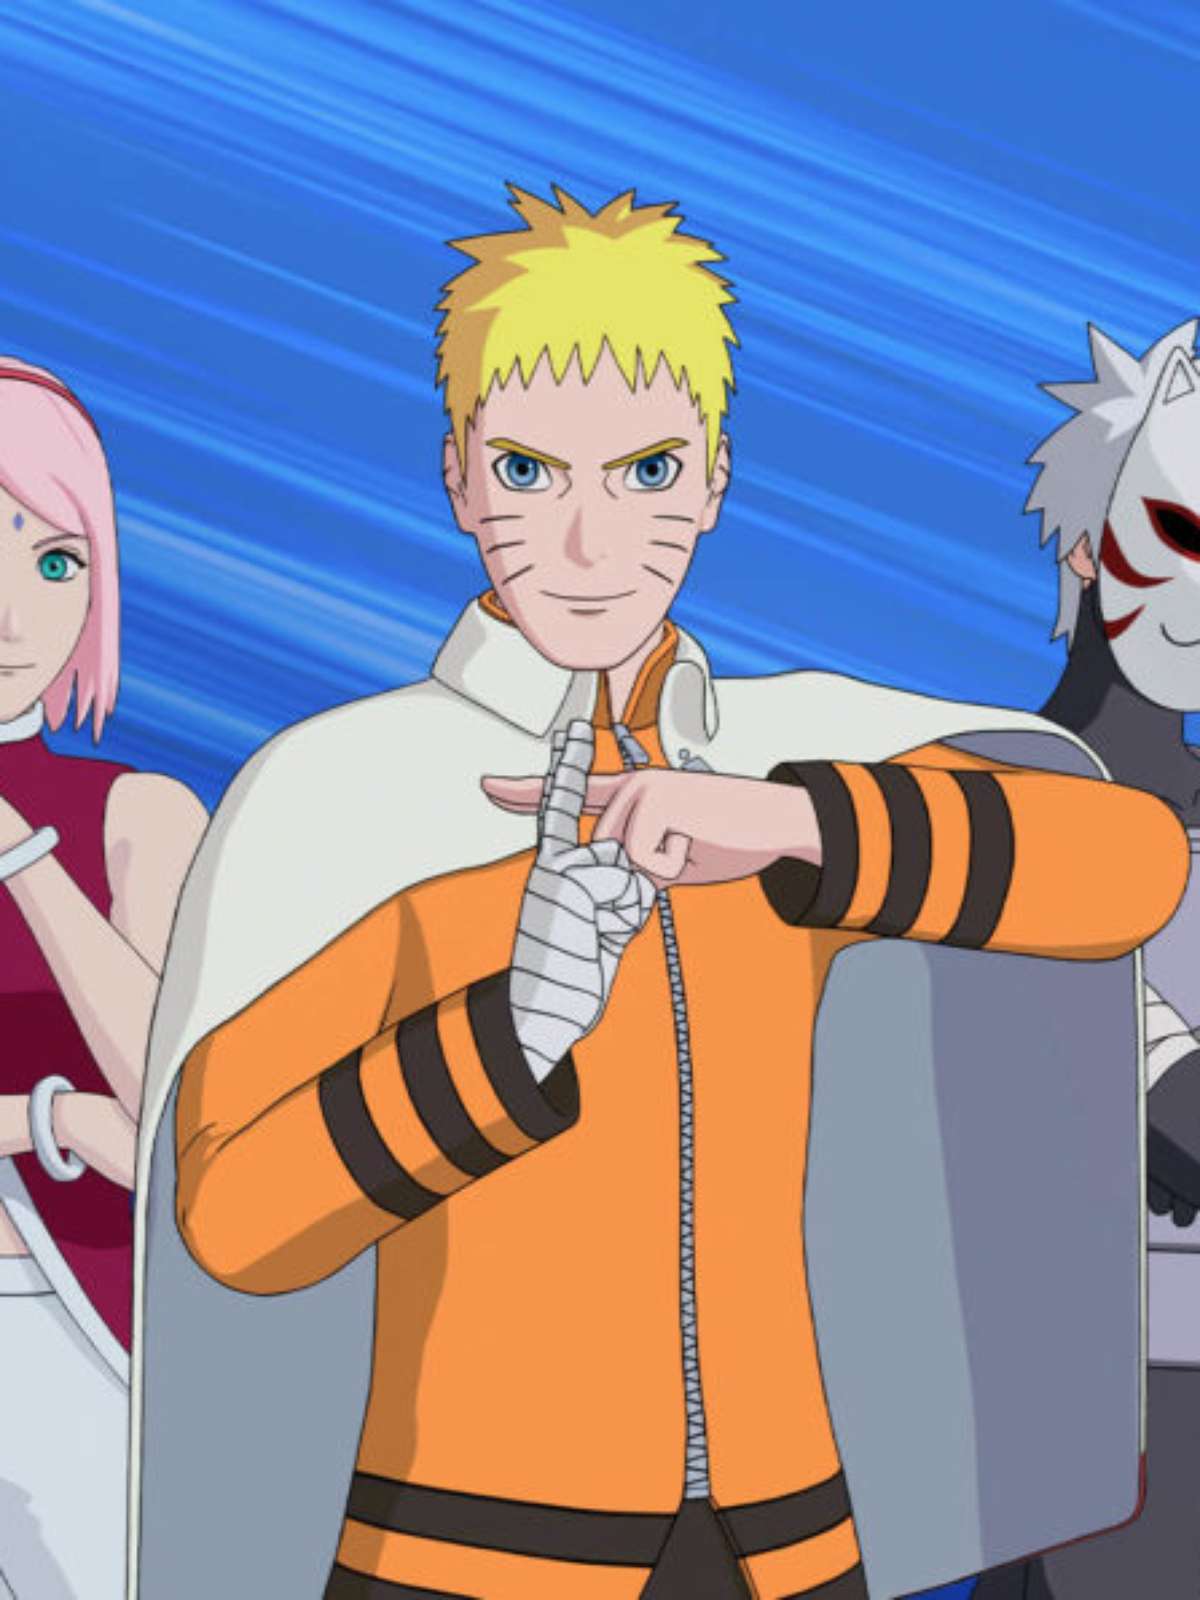 Fortnite e Naruto: The Nindo dá recompensas grátis; veja como pegar, fortnite